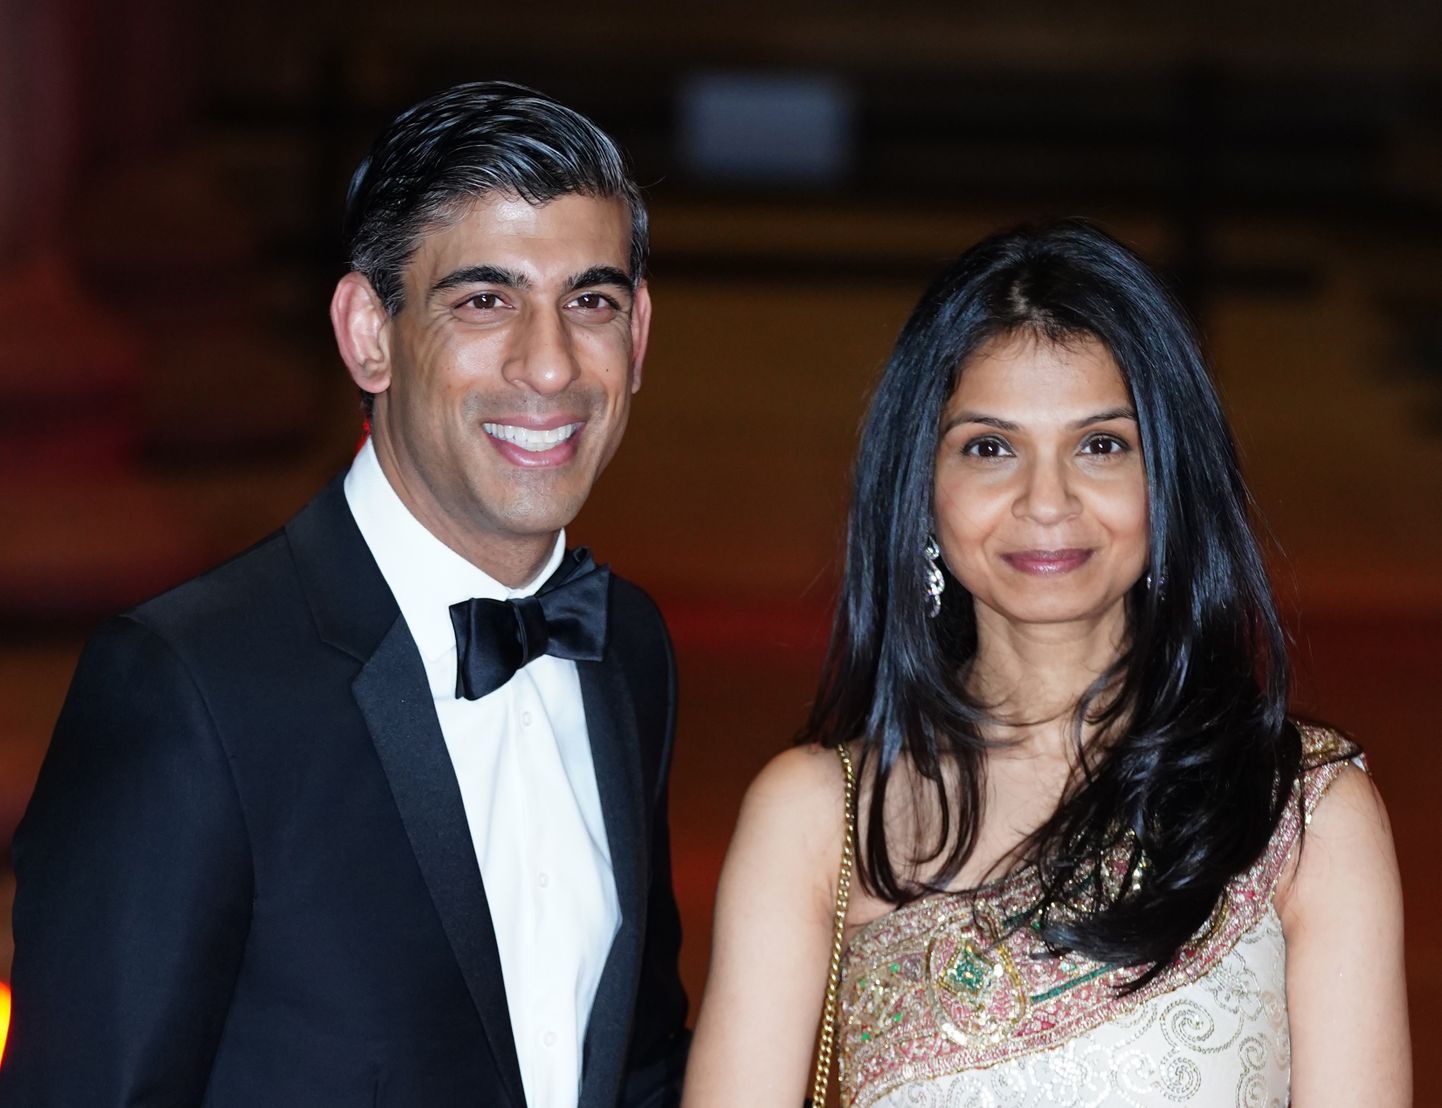 Briti rahandusminister Rishi Sunak naise Akshata Murthyga. Perekonna varanduseks on 750 miljonit naela.